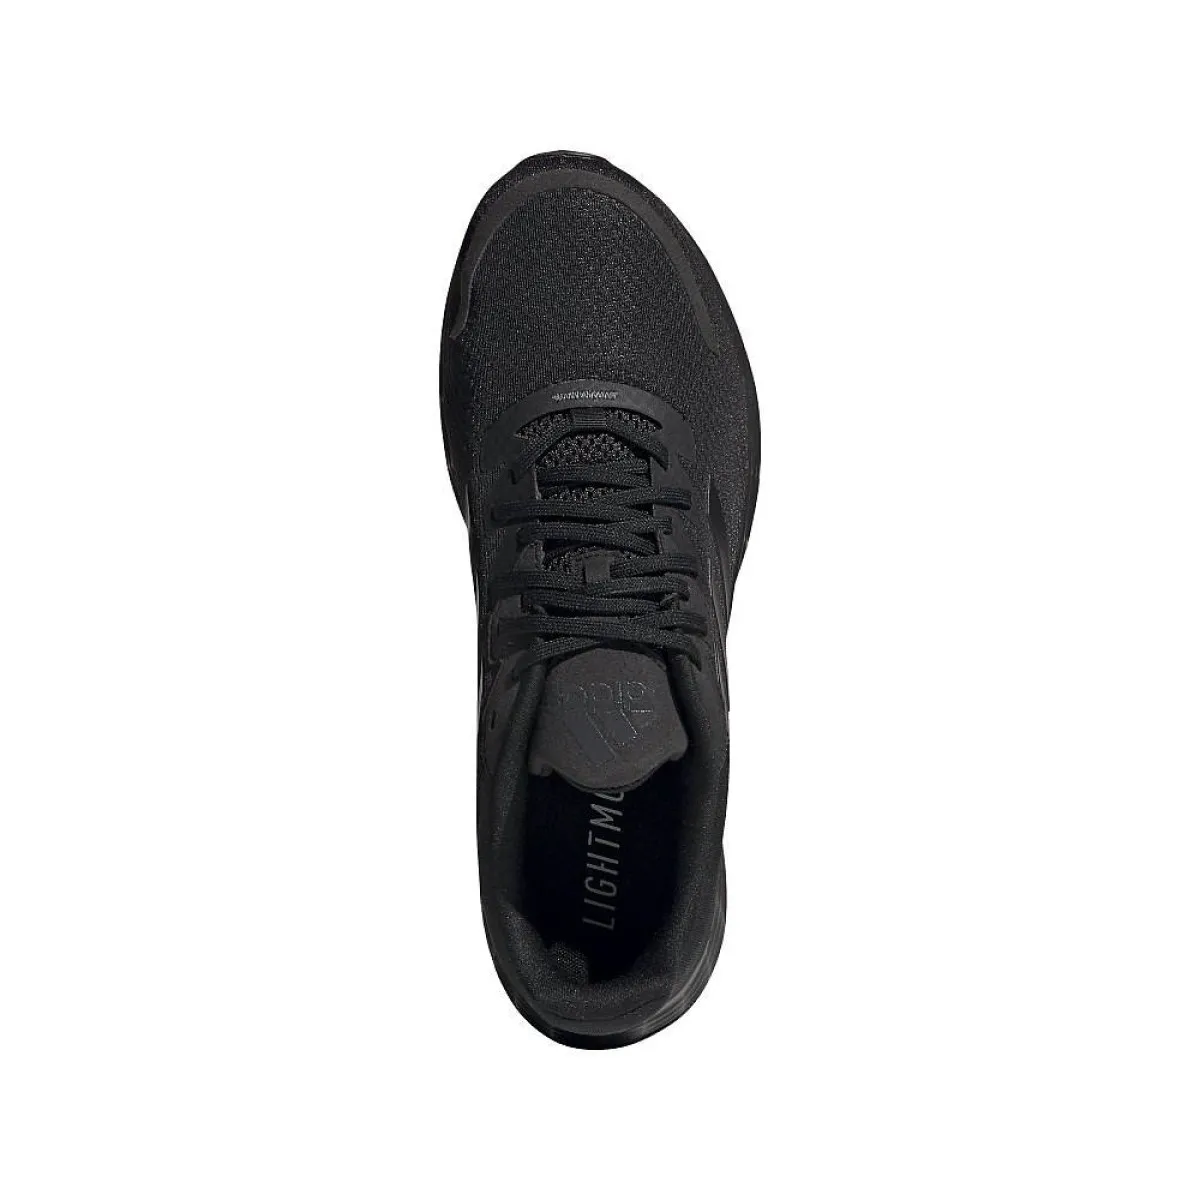 Zapatillas deportivas adidas Duramo SL negras